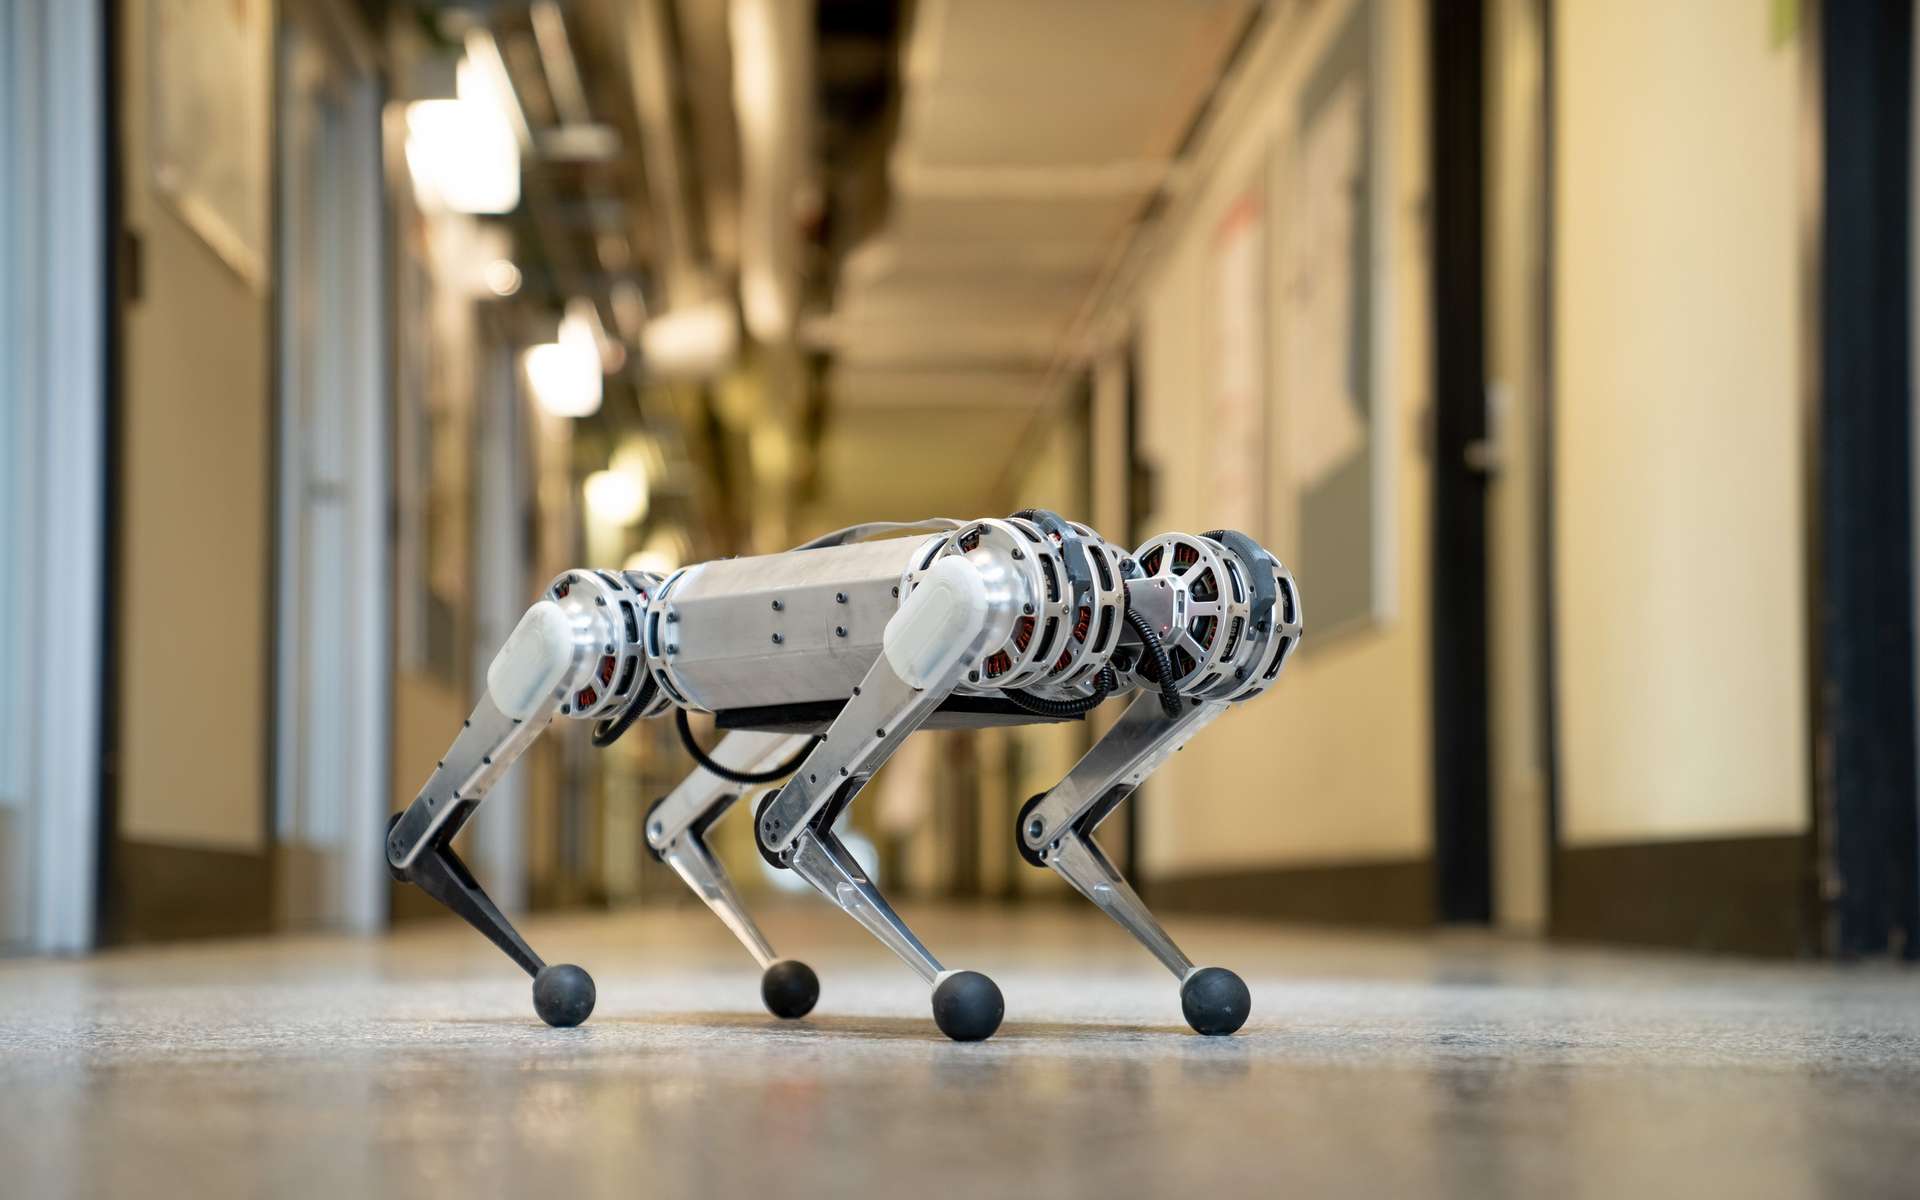 Après les sauts périlleux et le passage d'obstacles, Mini Cheetah a appris à courir. © Bryce Vickmark, MIT